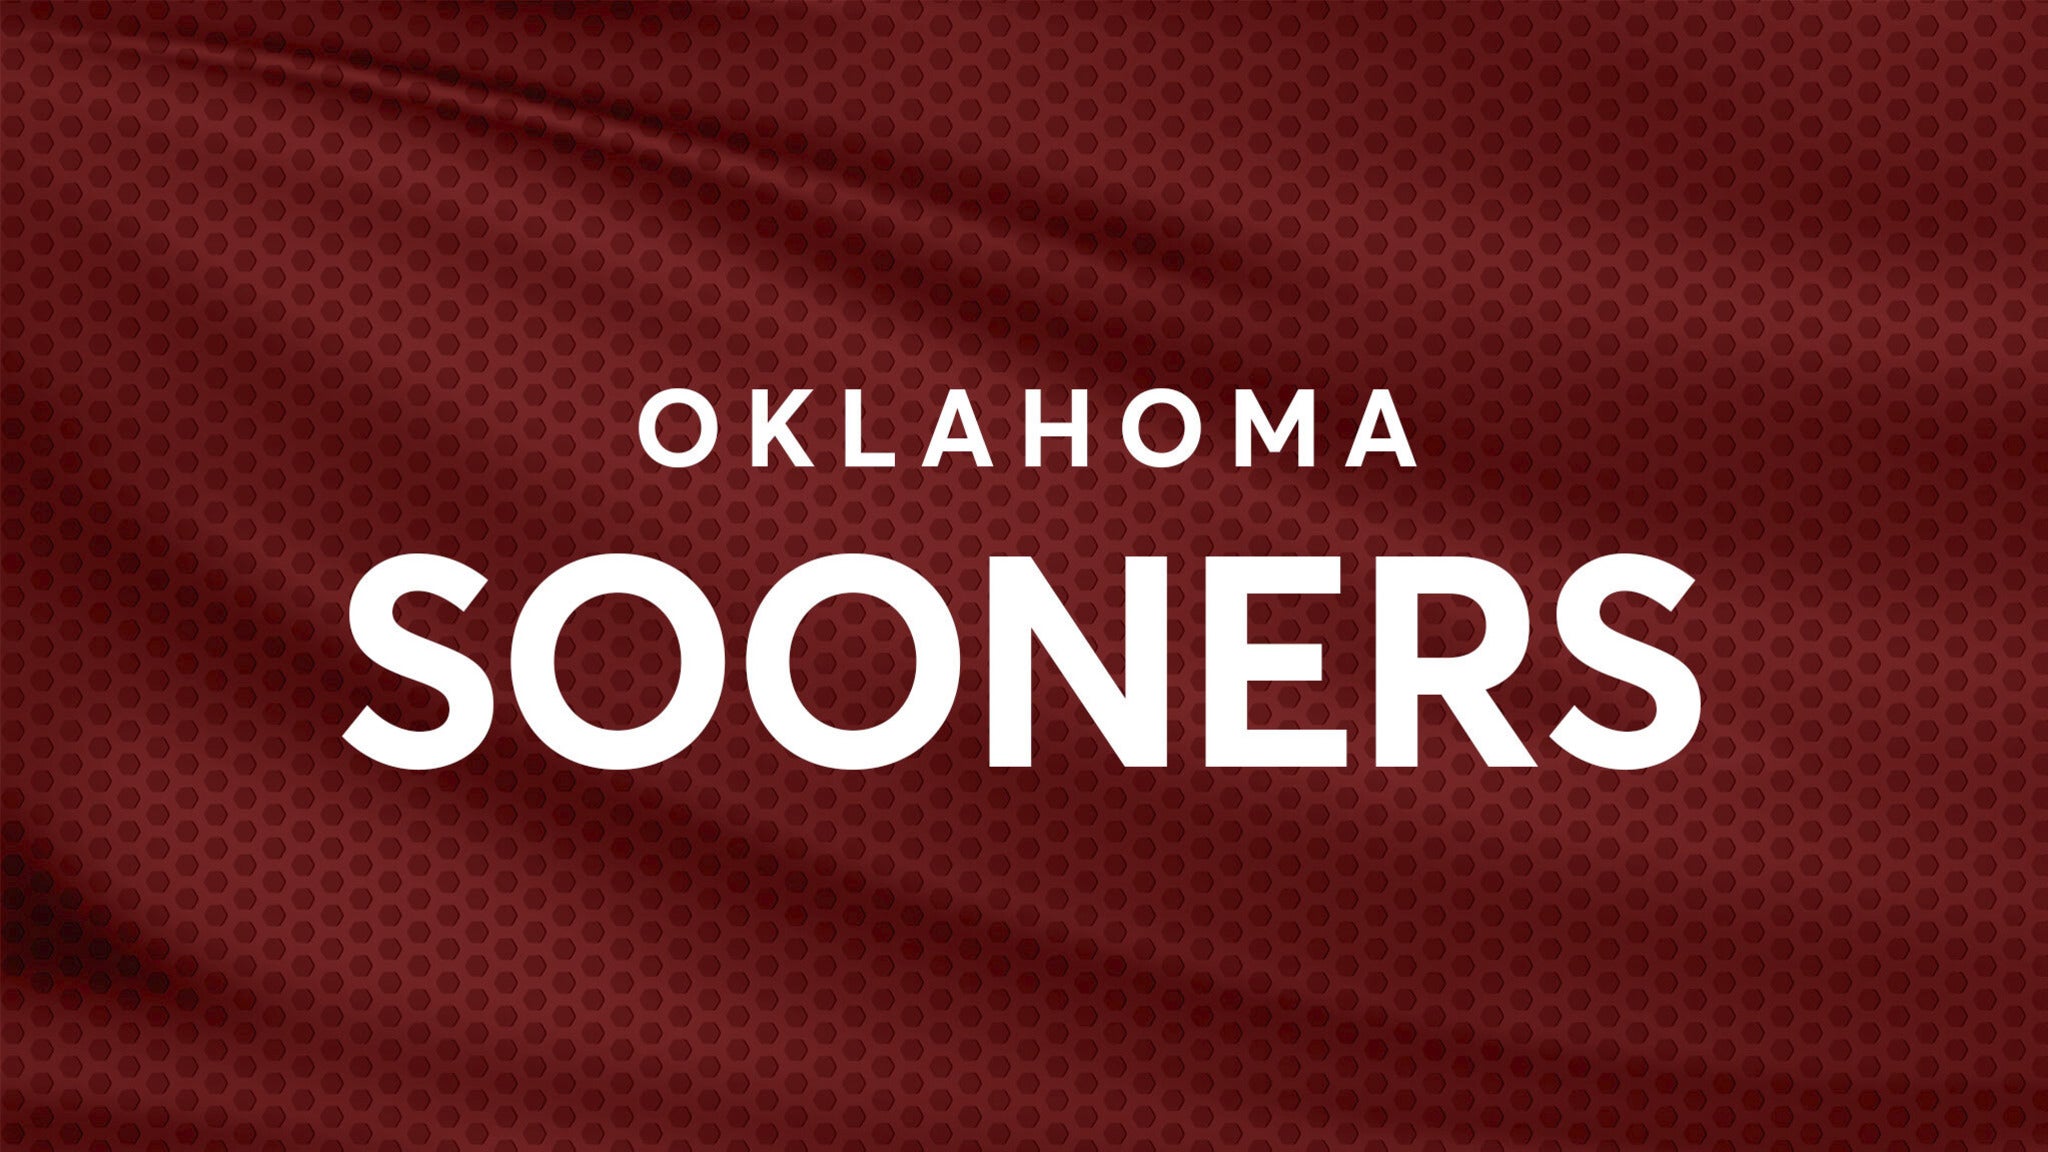 Oklahoma Sooners Football vs. Oklahoma State Cowboys Football